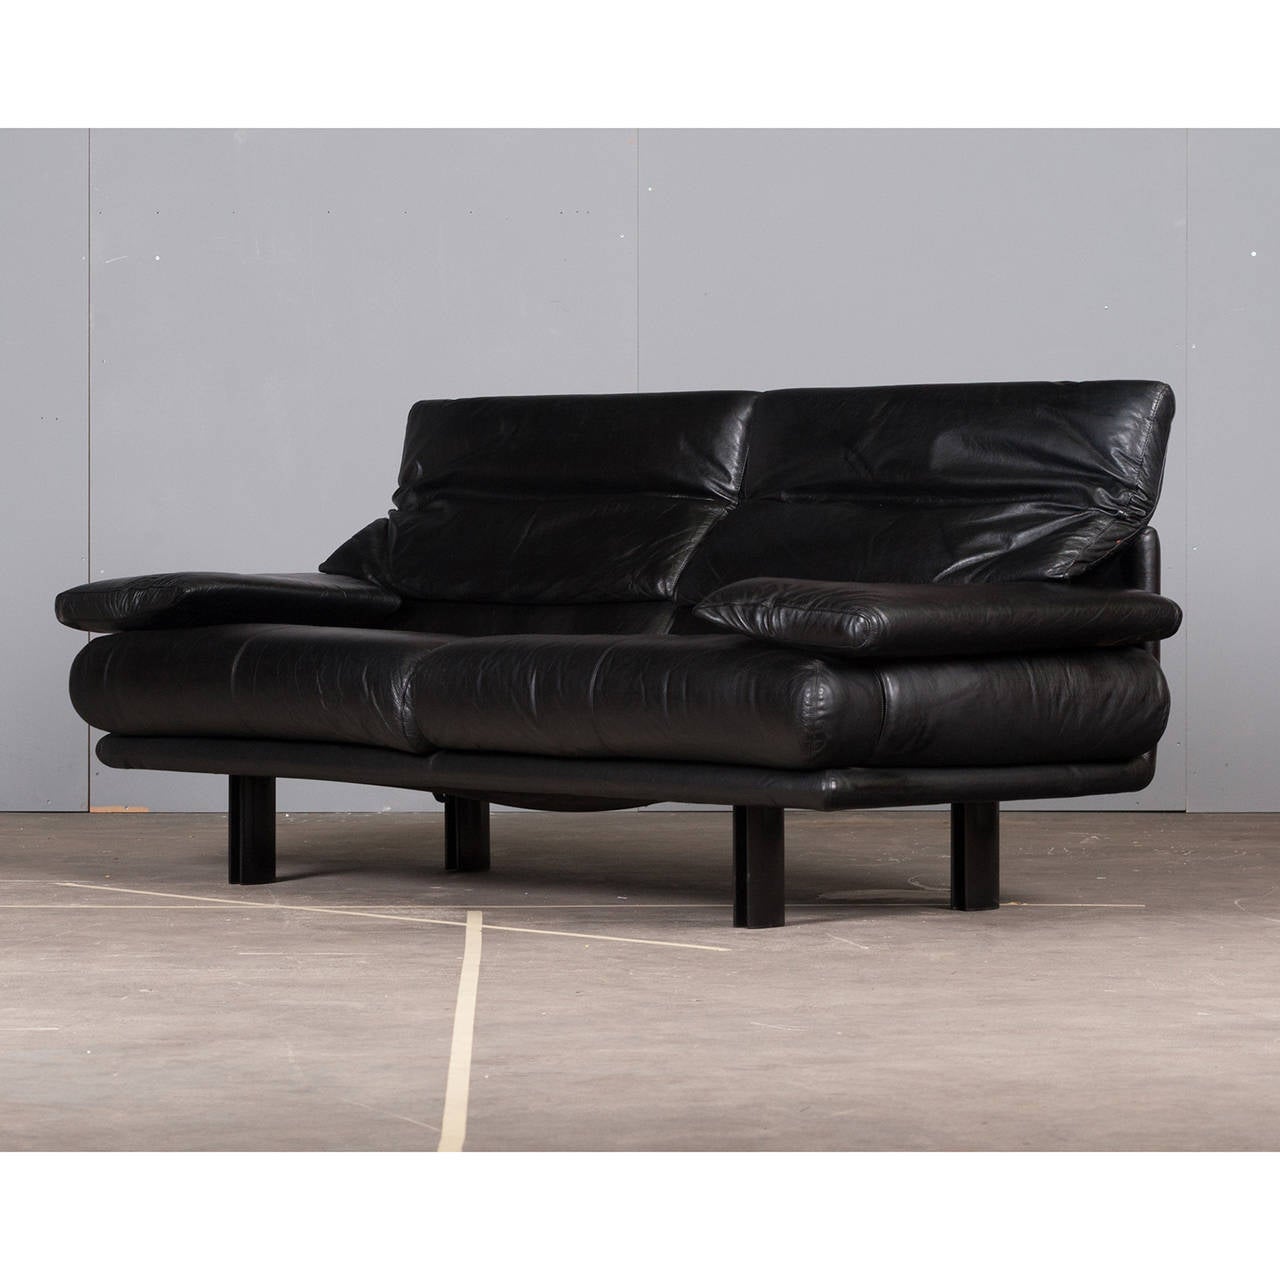 Enameled Italian Paolo Piva 'Alanda' Sofa in Black Leather for B&B ITALIA, 1980s